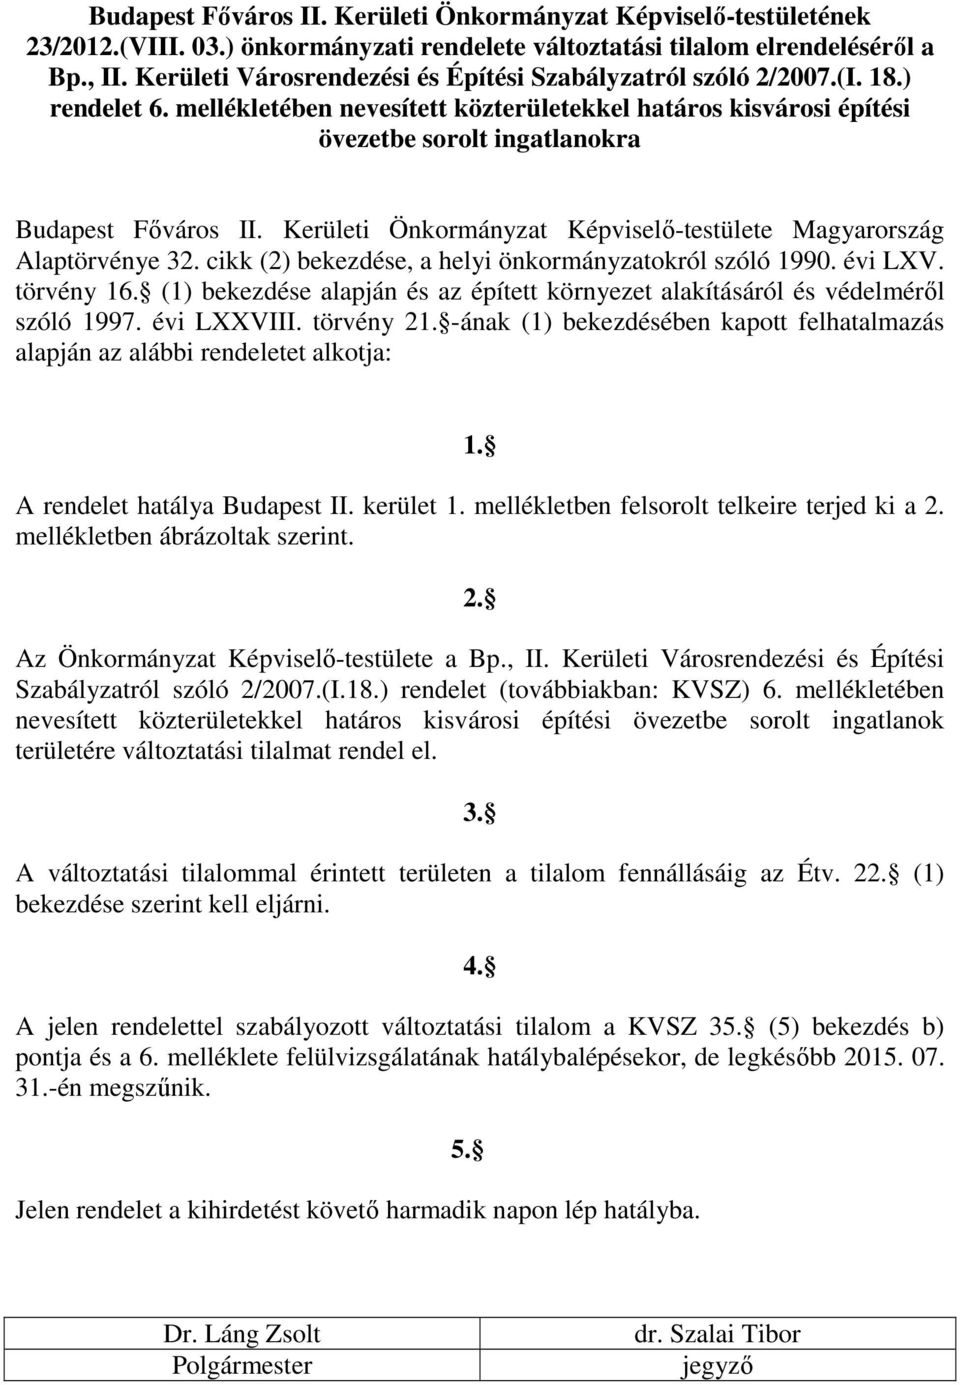 Kerületi Önkormányzat Képviselı-testülete Magyarország Alaptörvénye 32. cikk (2) bekezdése, a helyi önkormányzatokról szóló 1990. évi LXV. törvény 16.